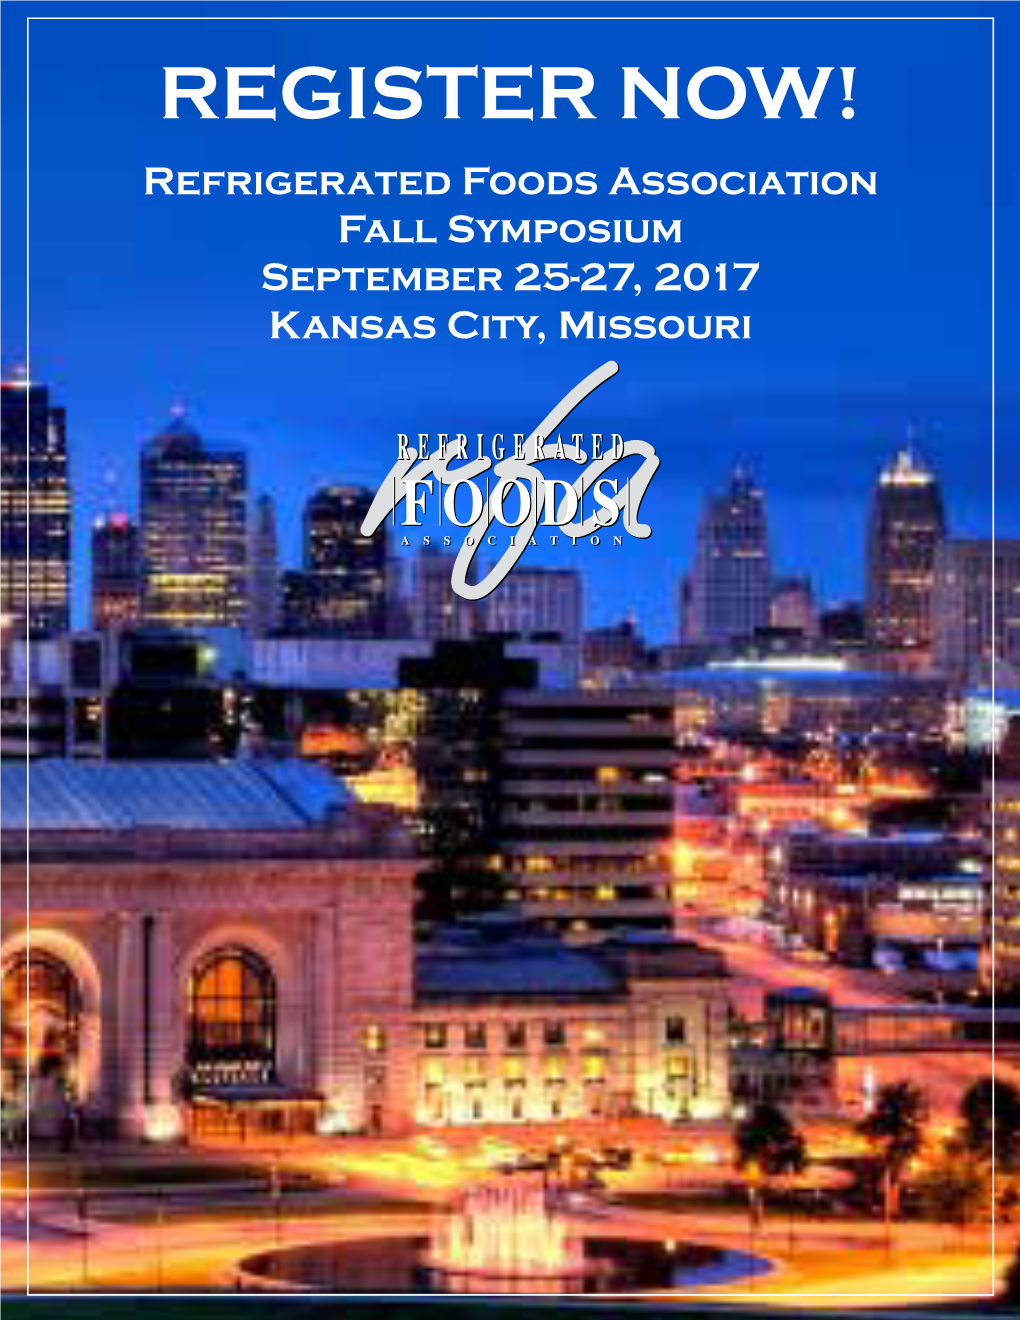 REGISTER NOW! Refrigerated Foods Association Fall Symposium September 25-27, 2017 Kansas City, Missouri 2017 Symposium